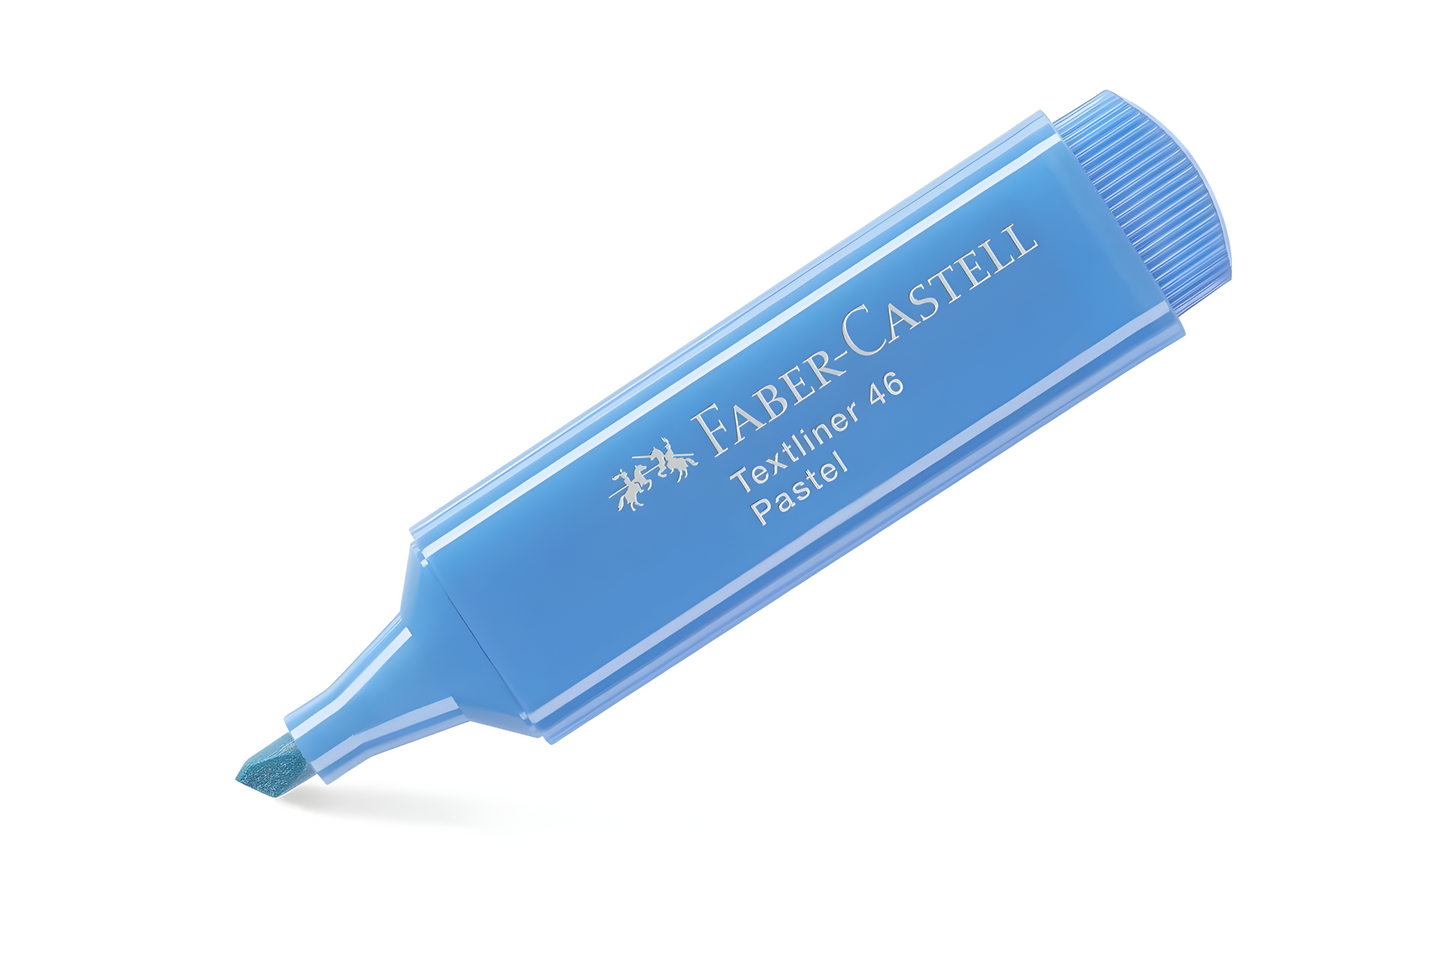 Faber-Castell Pastel Highlighter Textliner 46 | 10pcs